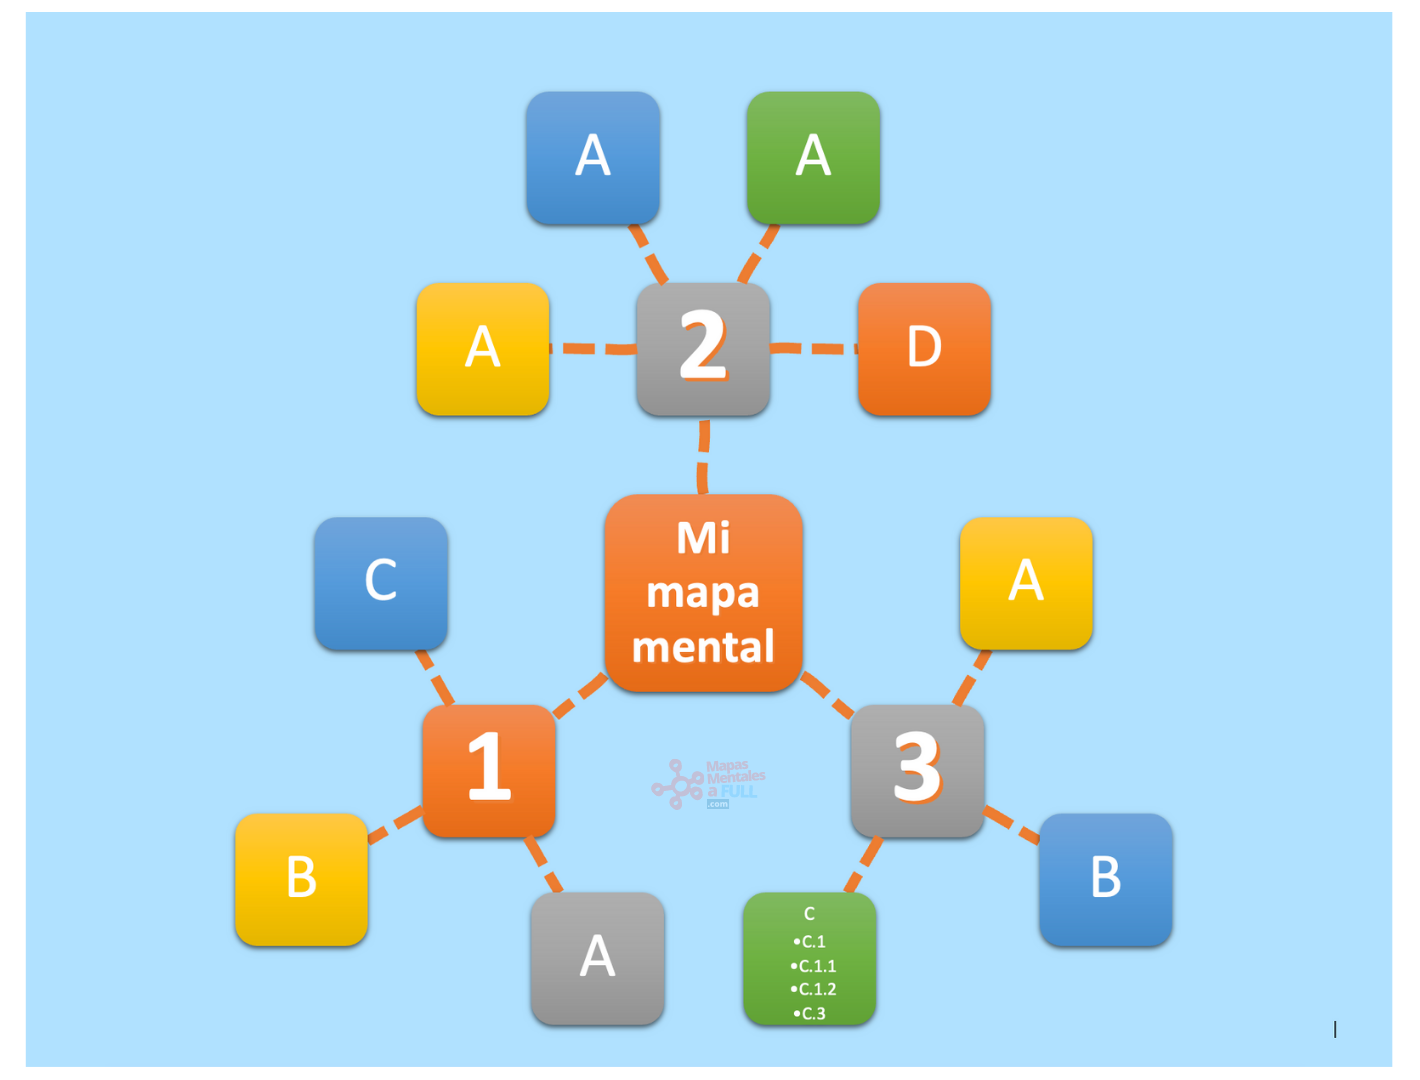 19 resultado del mapa mental automático en microsoft word